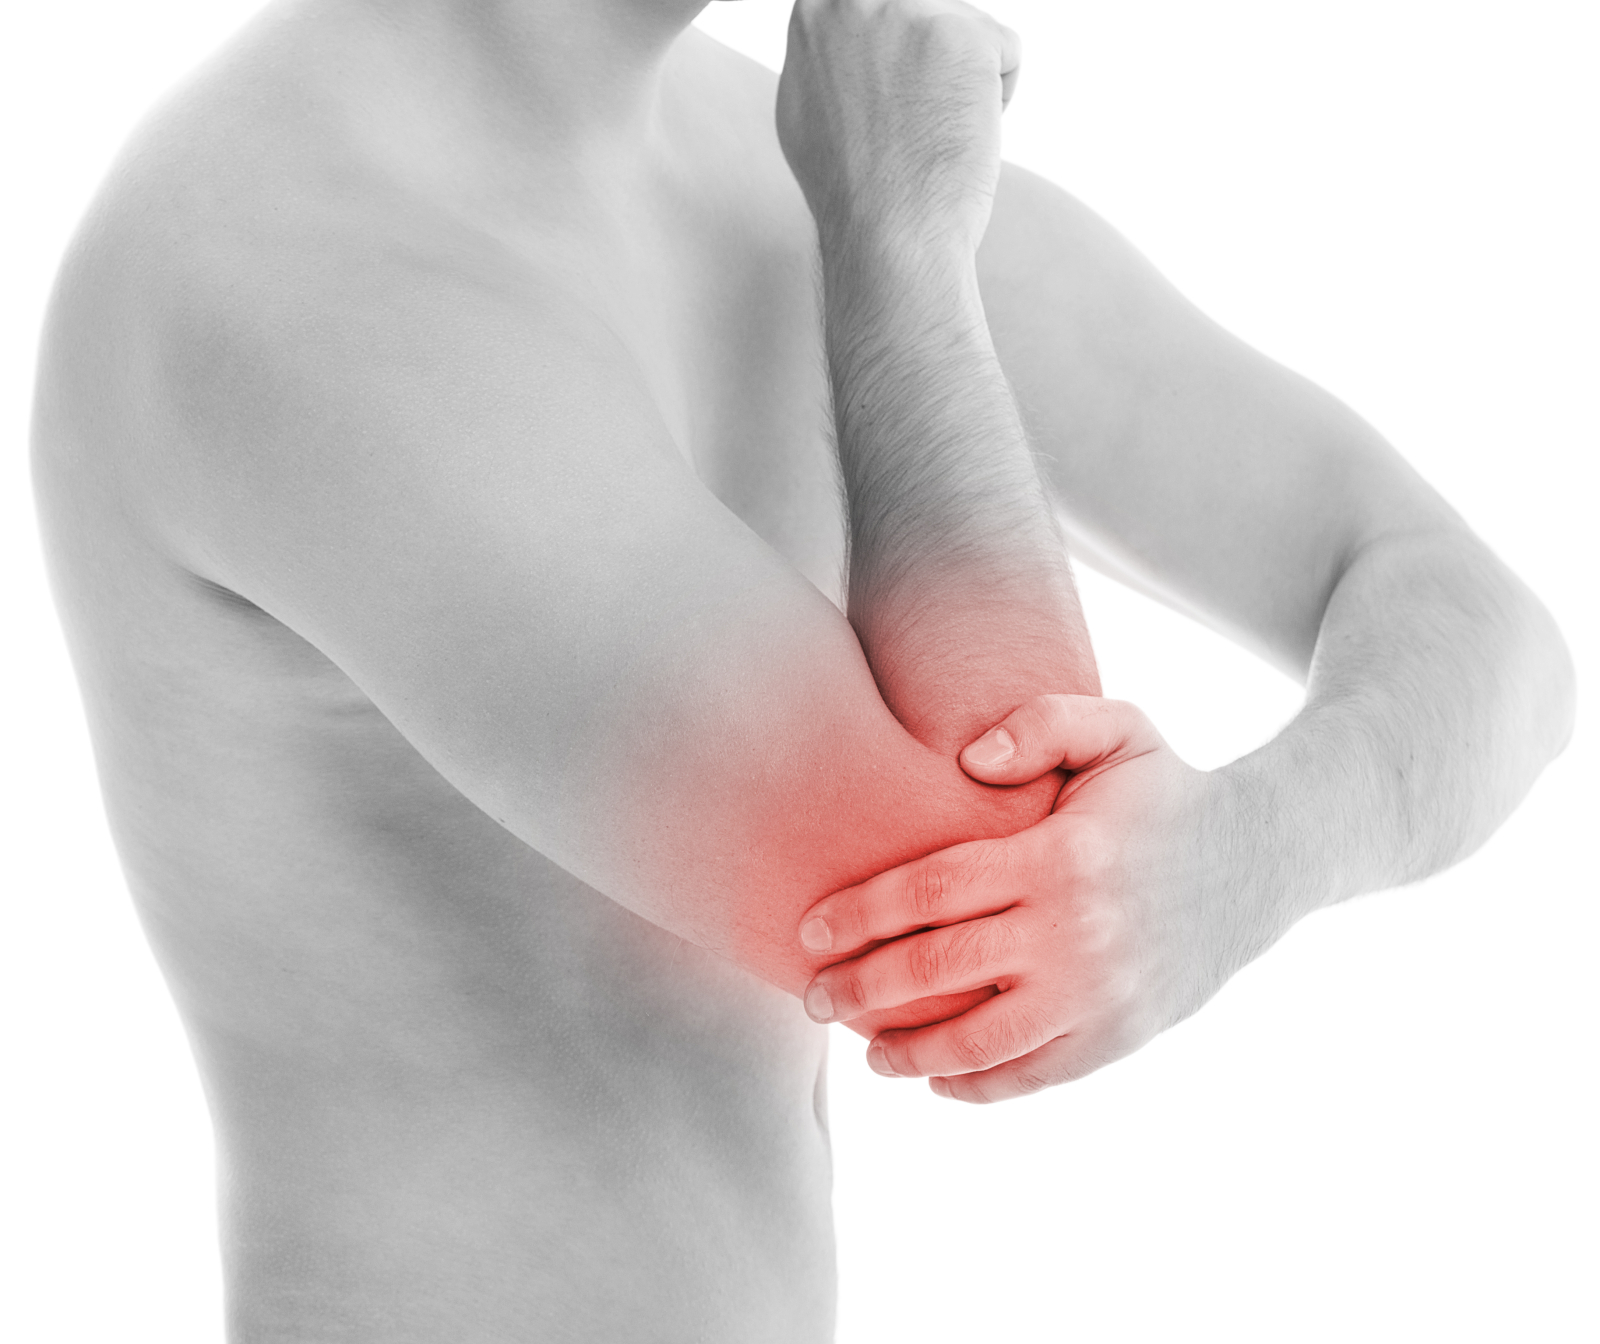 boli și leziuni ale semnelor articulațiilor picioarelor pentru durere în compresa de sare articulară